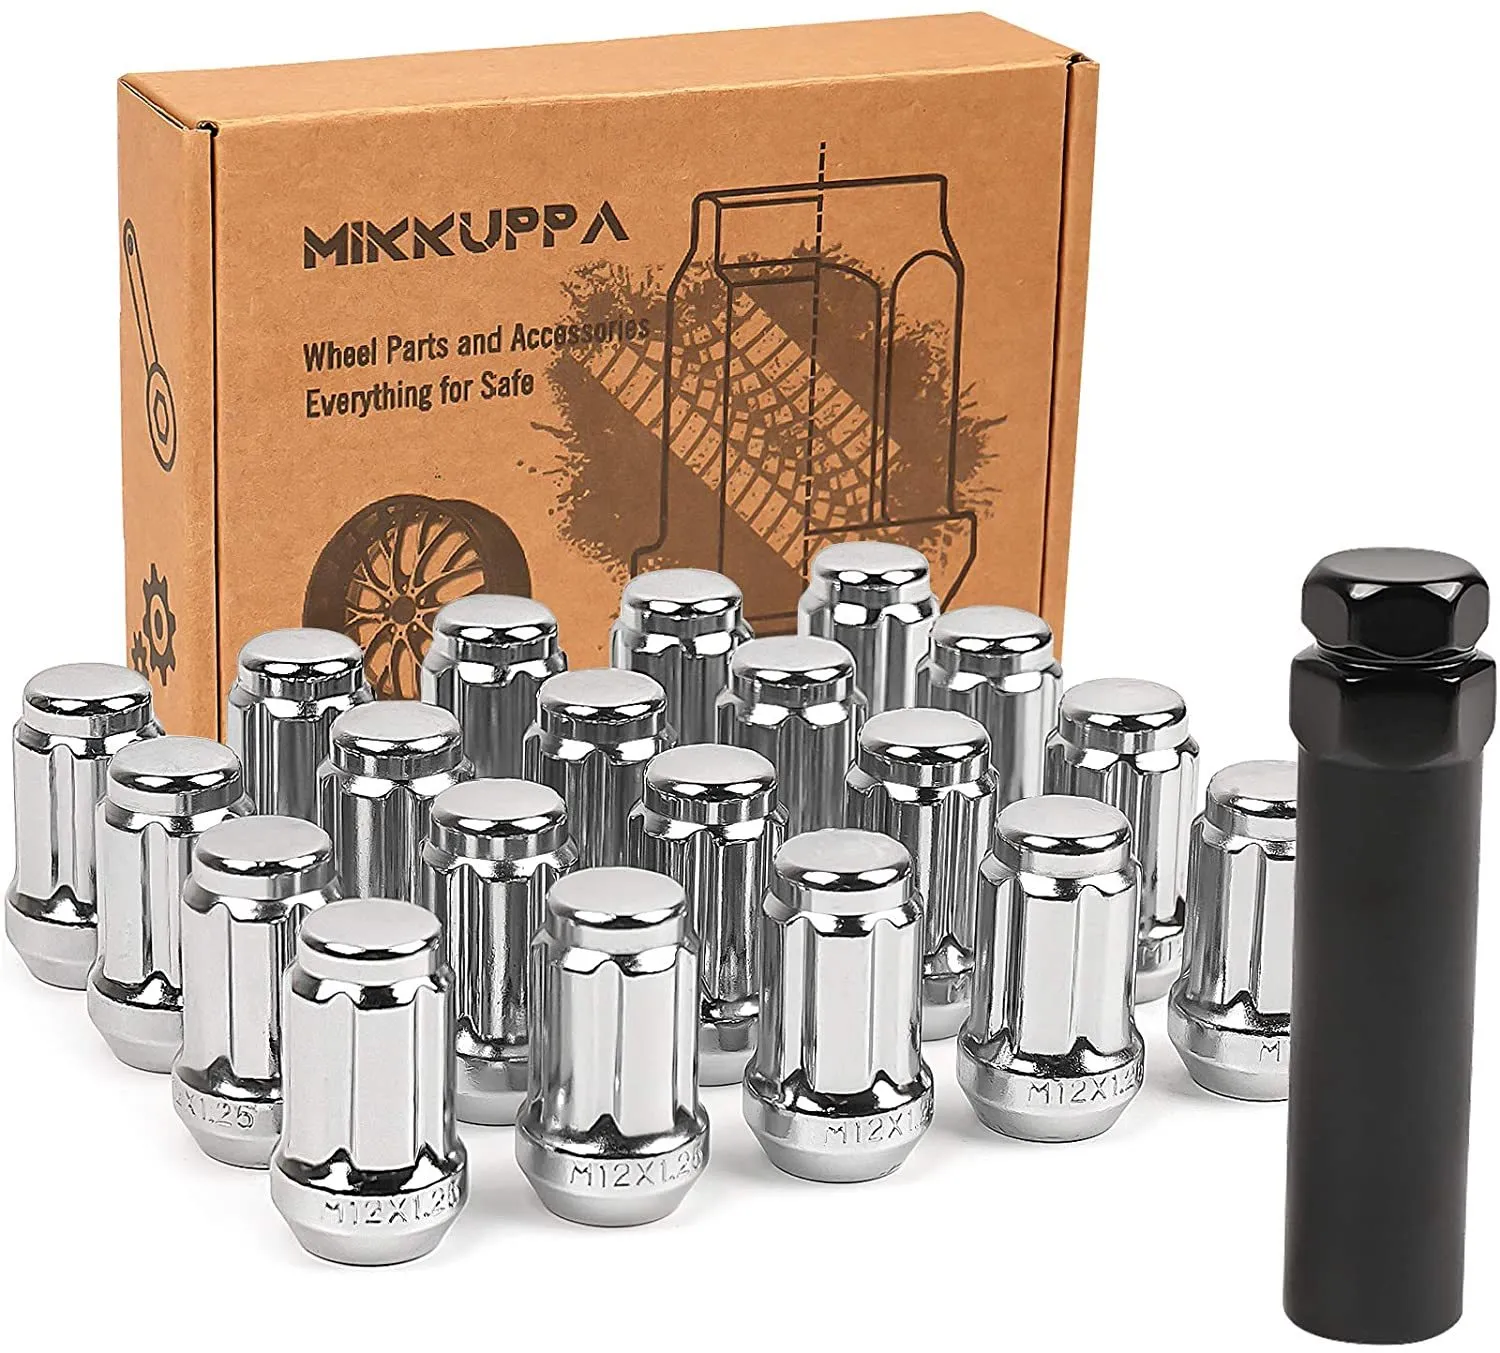 MIKKUPPA M12x1.25 per ruote aftermarket Infiniti/ Altima/ Maxima/Subaru 20 pezzi dadi cromati con estremità chiusa